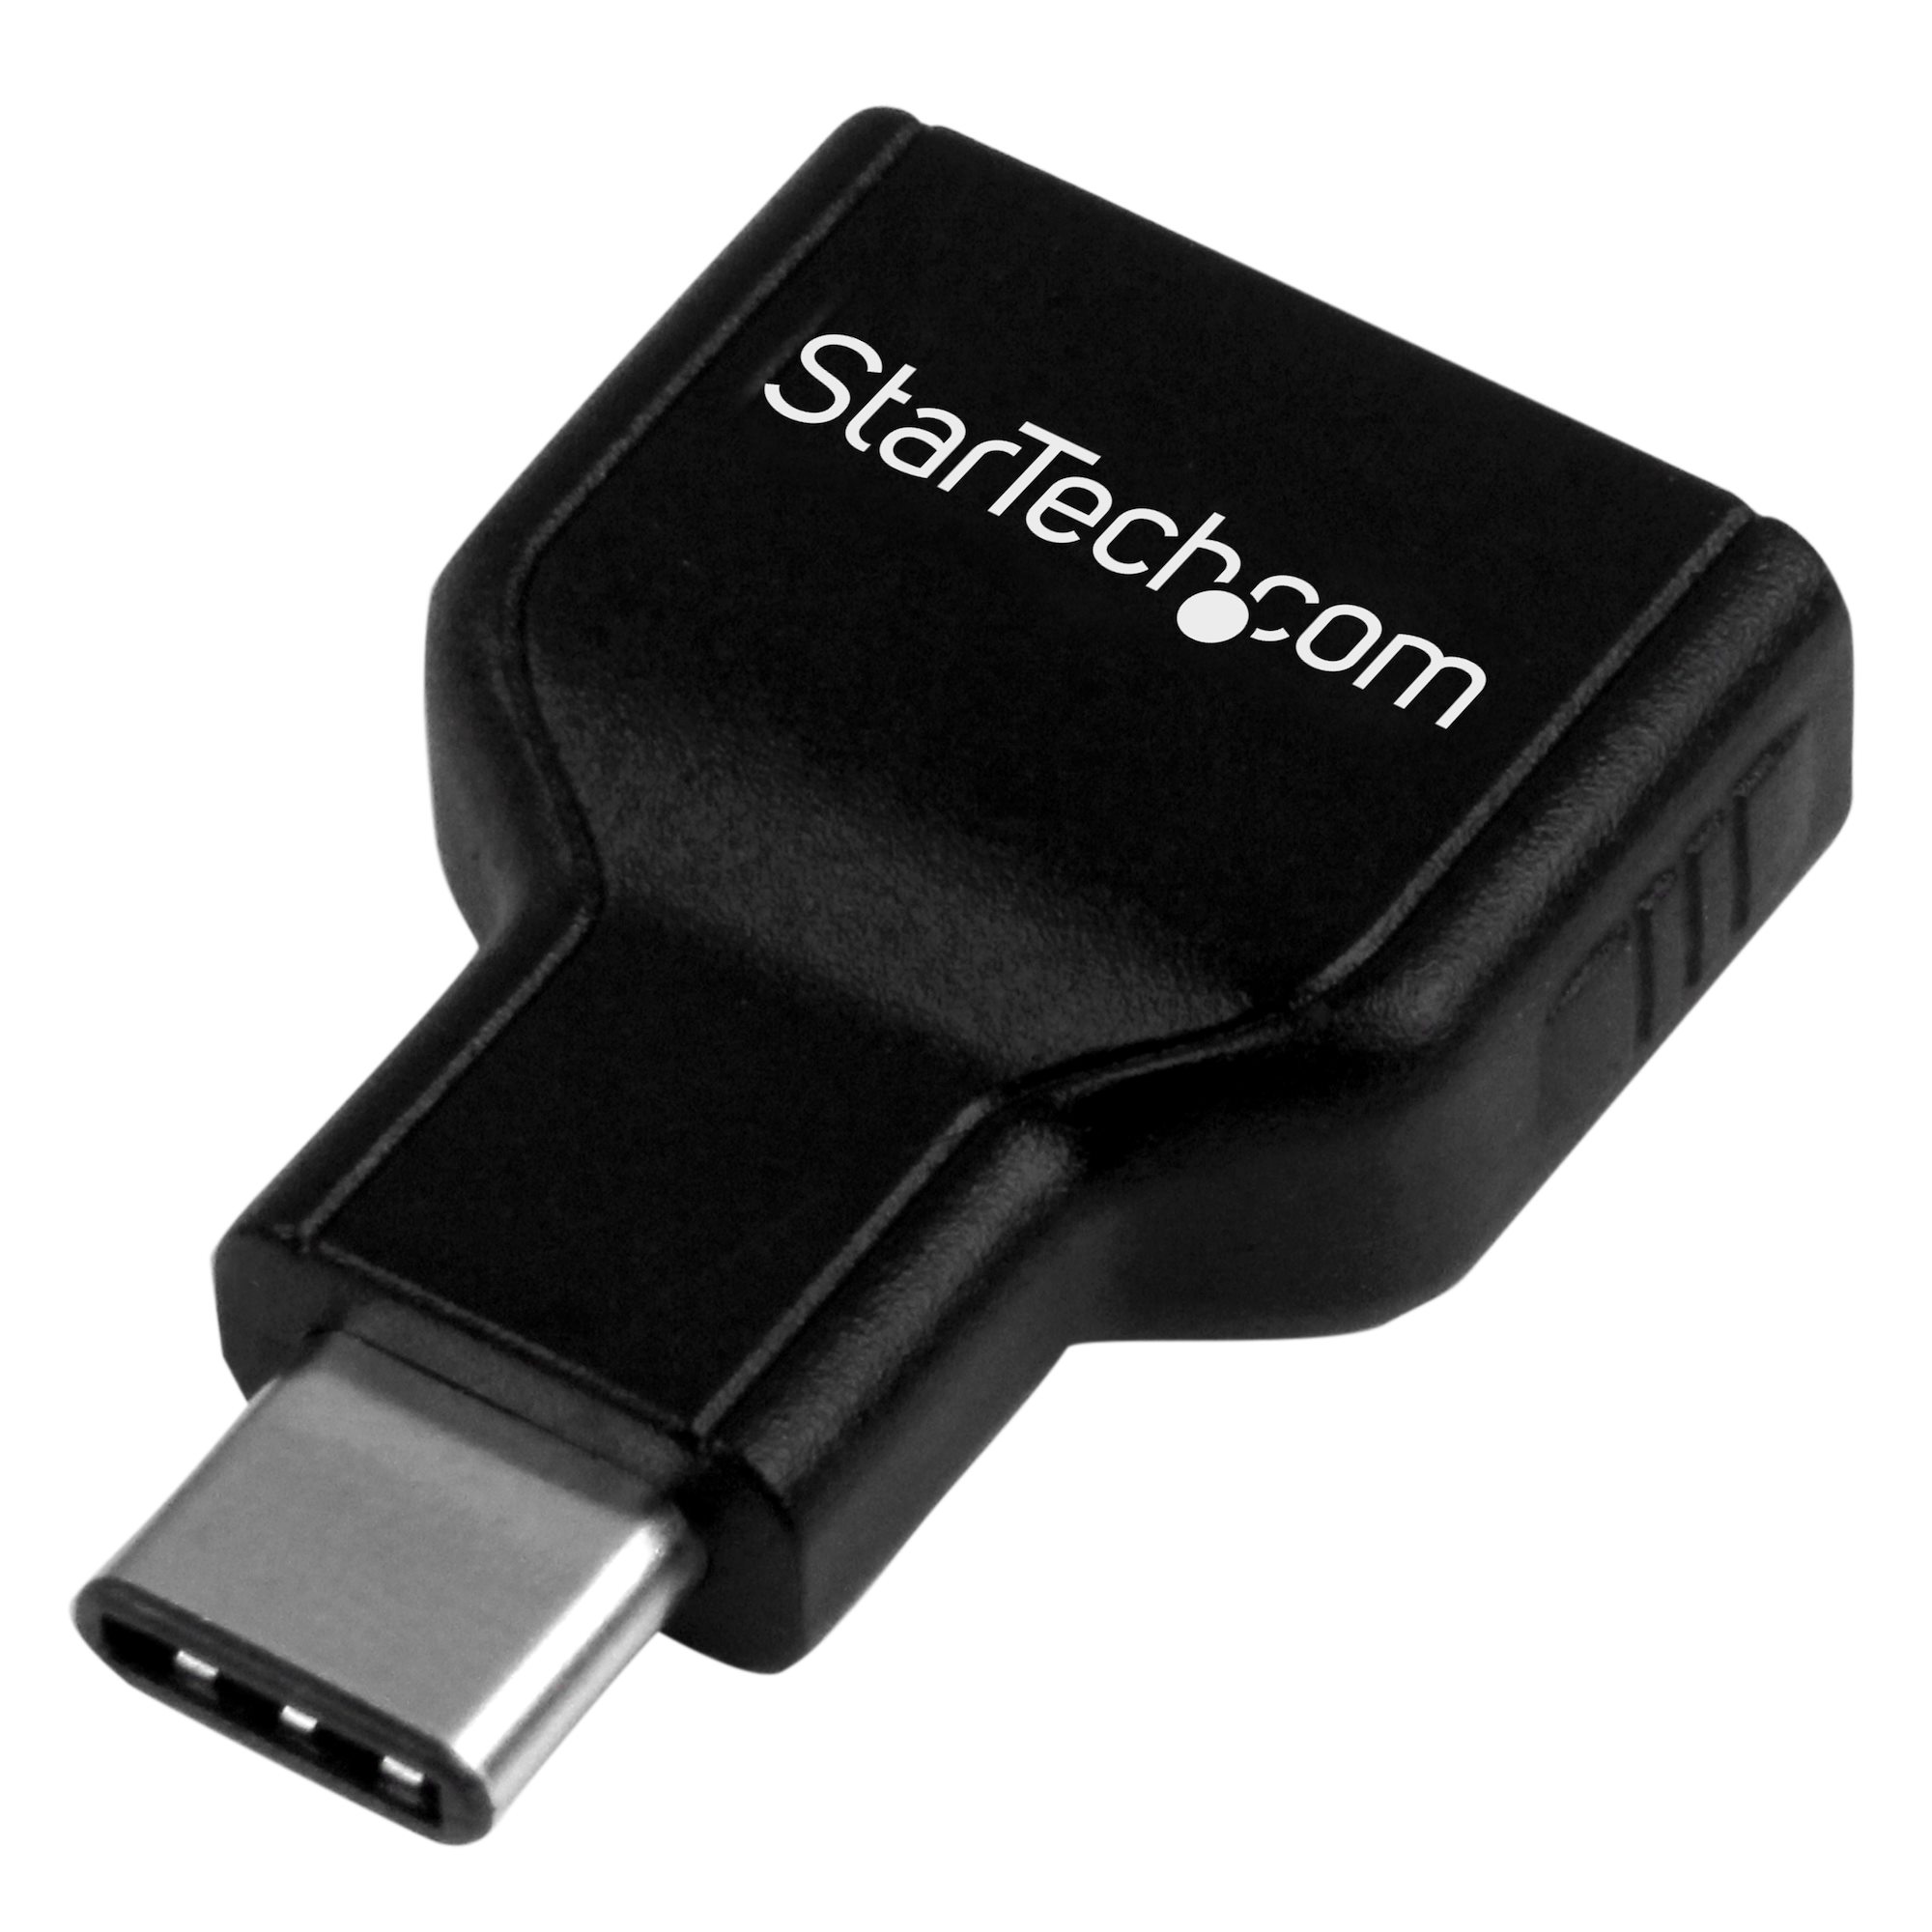 【USB31CAADG】USB 3.0 USB-C TO USB-A ADAPTER